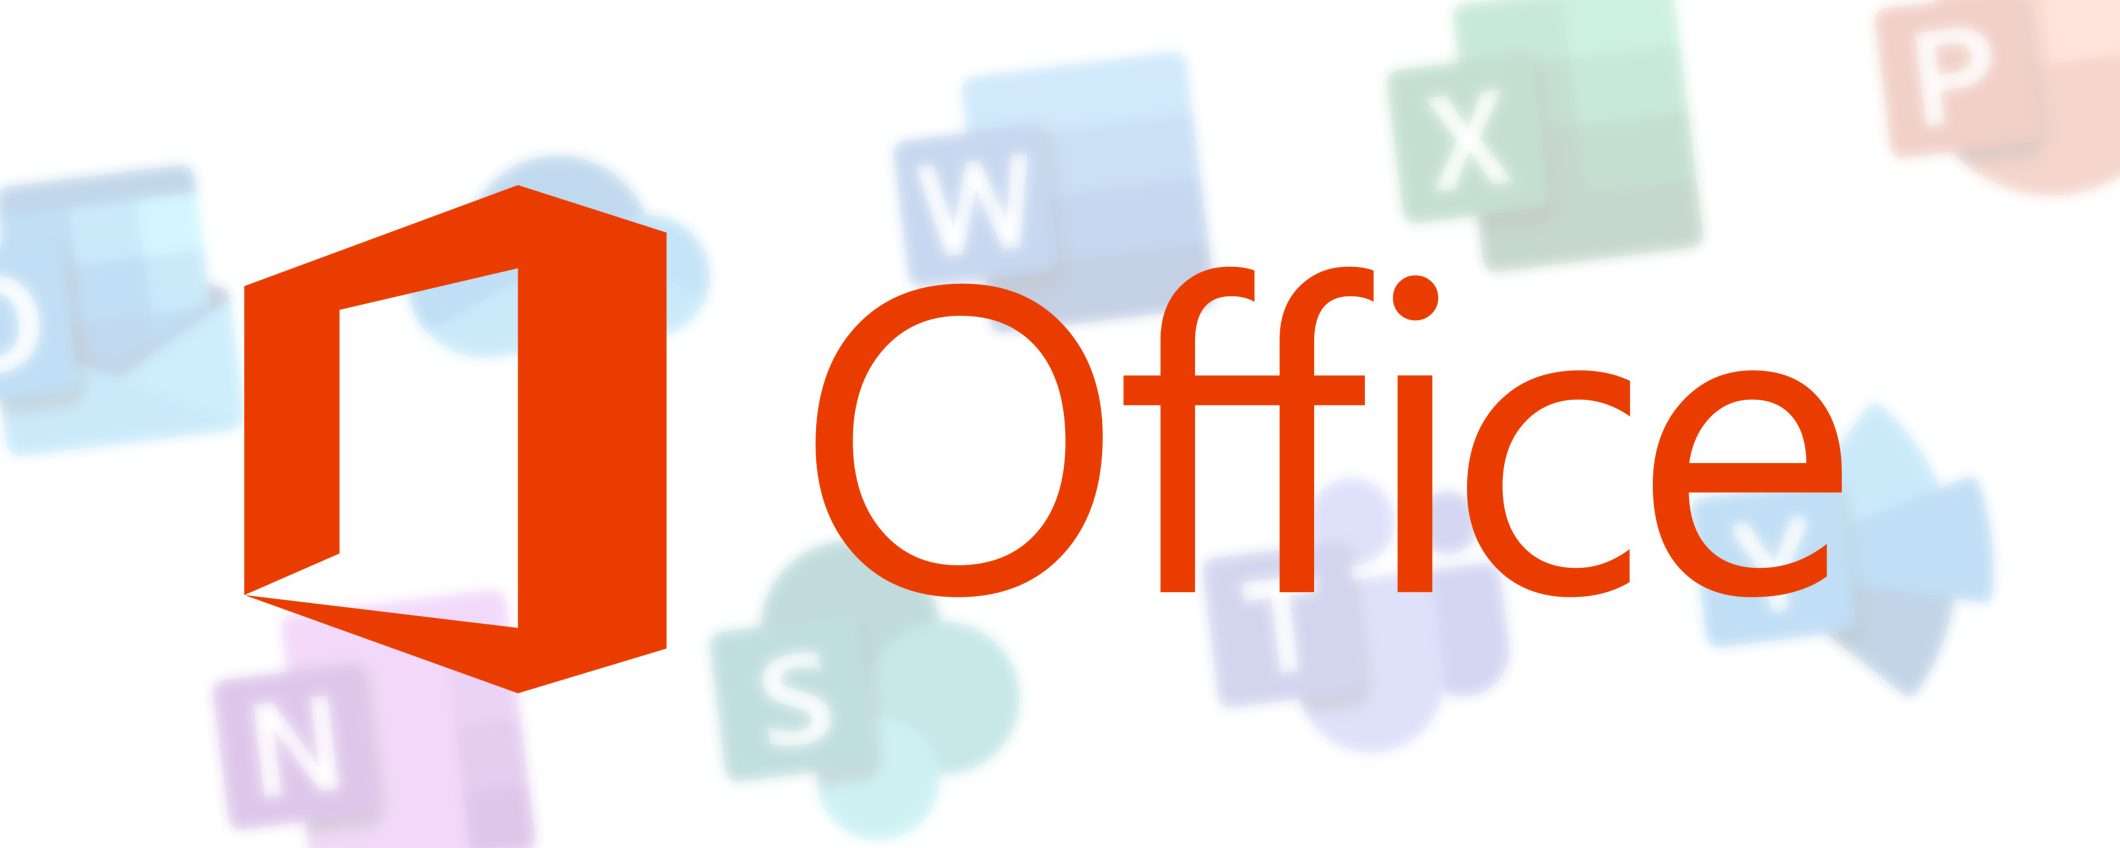 Microsoft 365 o Office 2021? Scopri le differenze e scegli